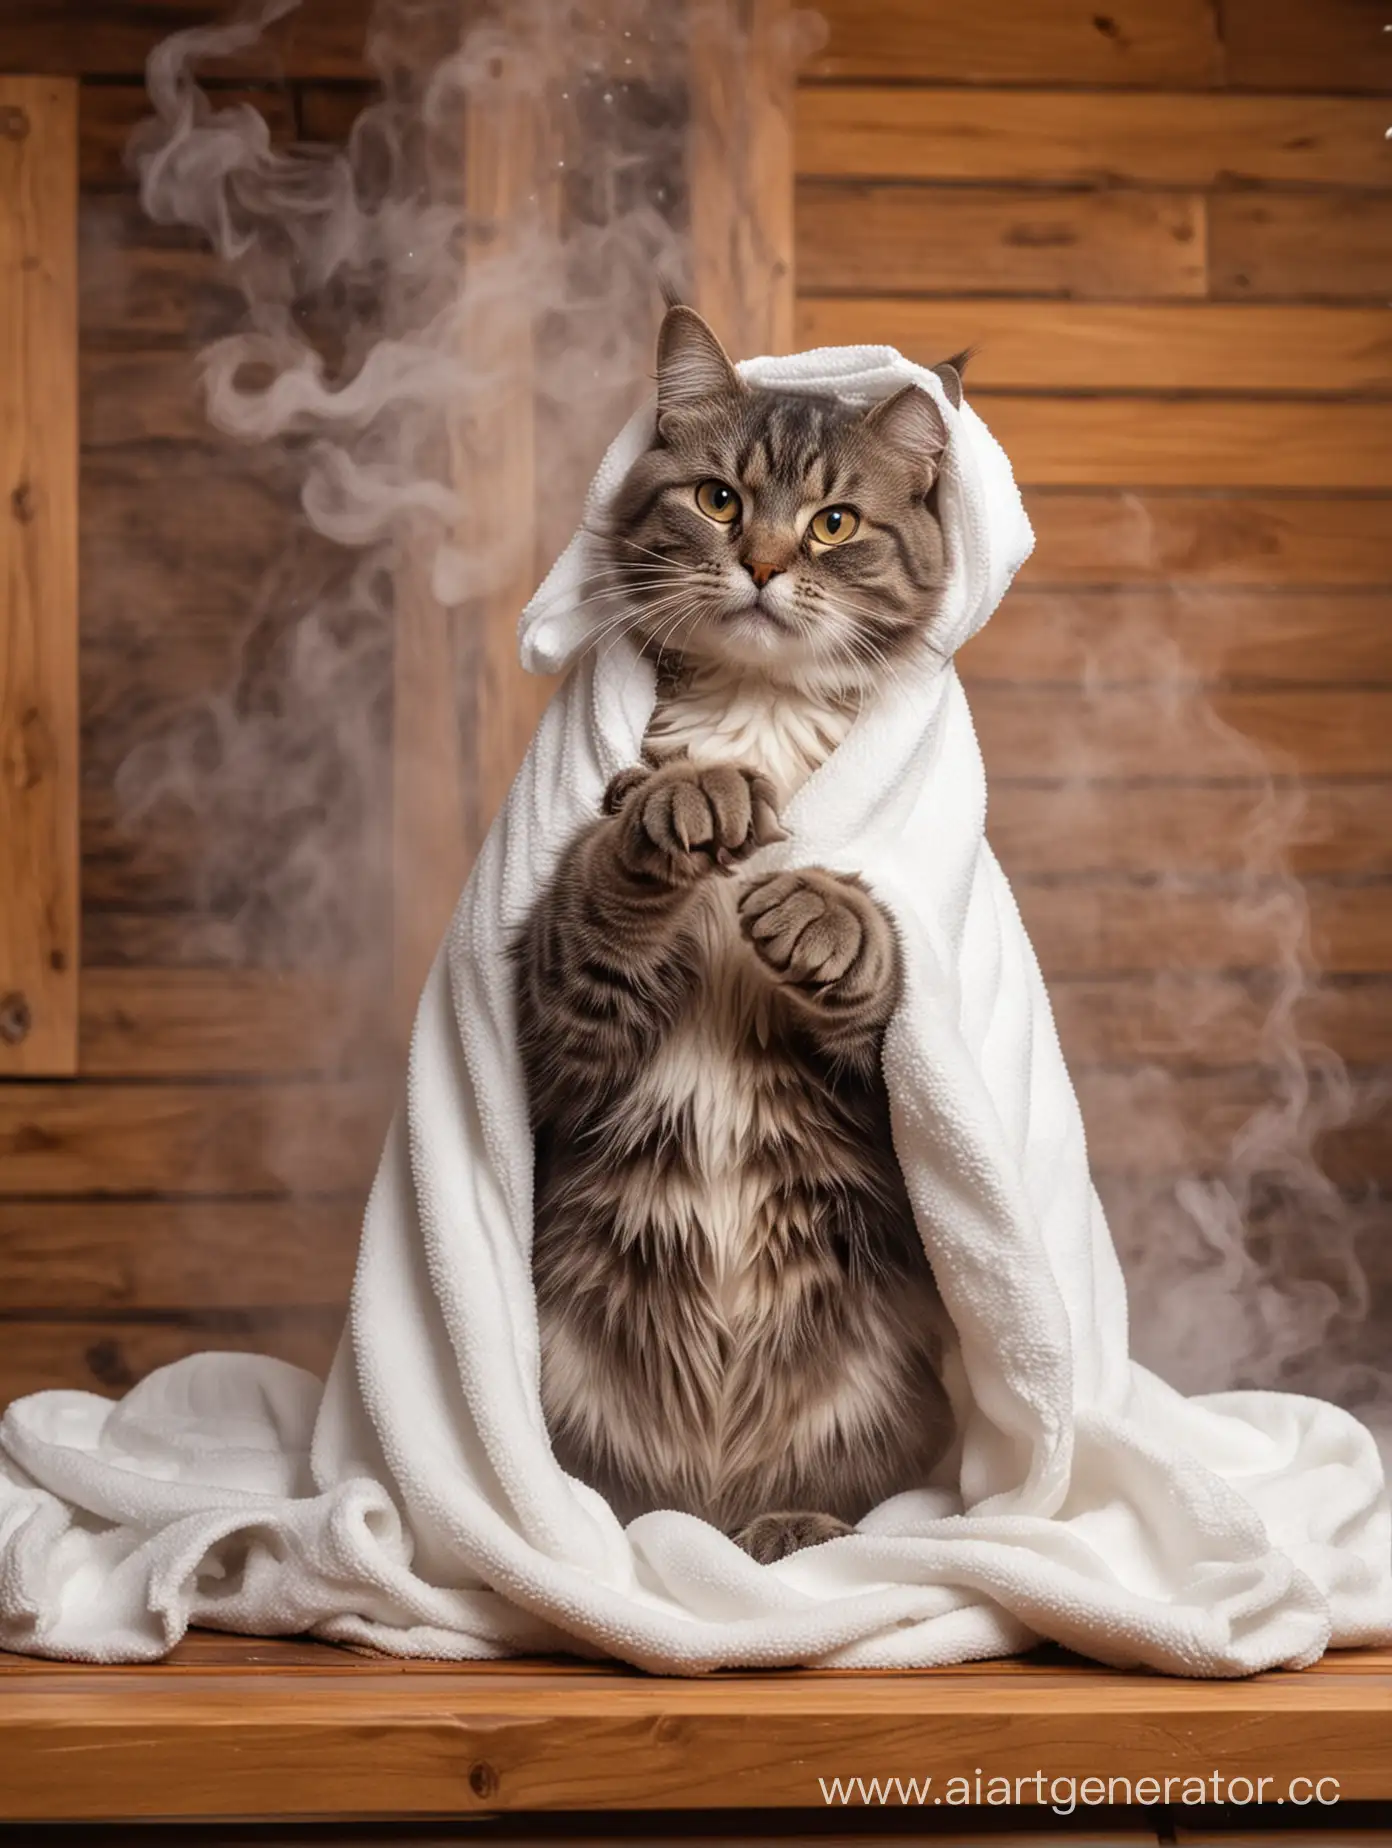 Кошка сидит в сауне, на голове у нее полотенце, вокруг пар, кошка очень довольная, показывает лапкой класс